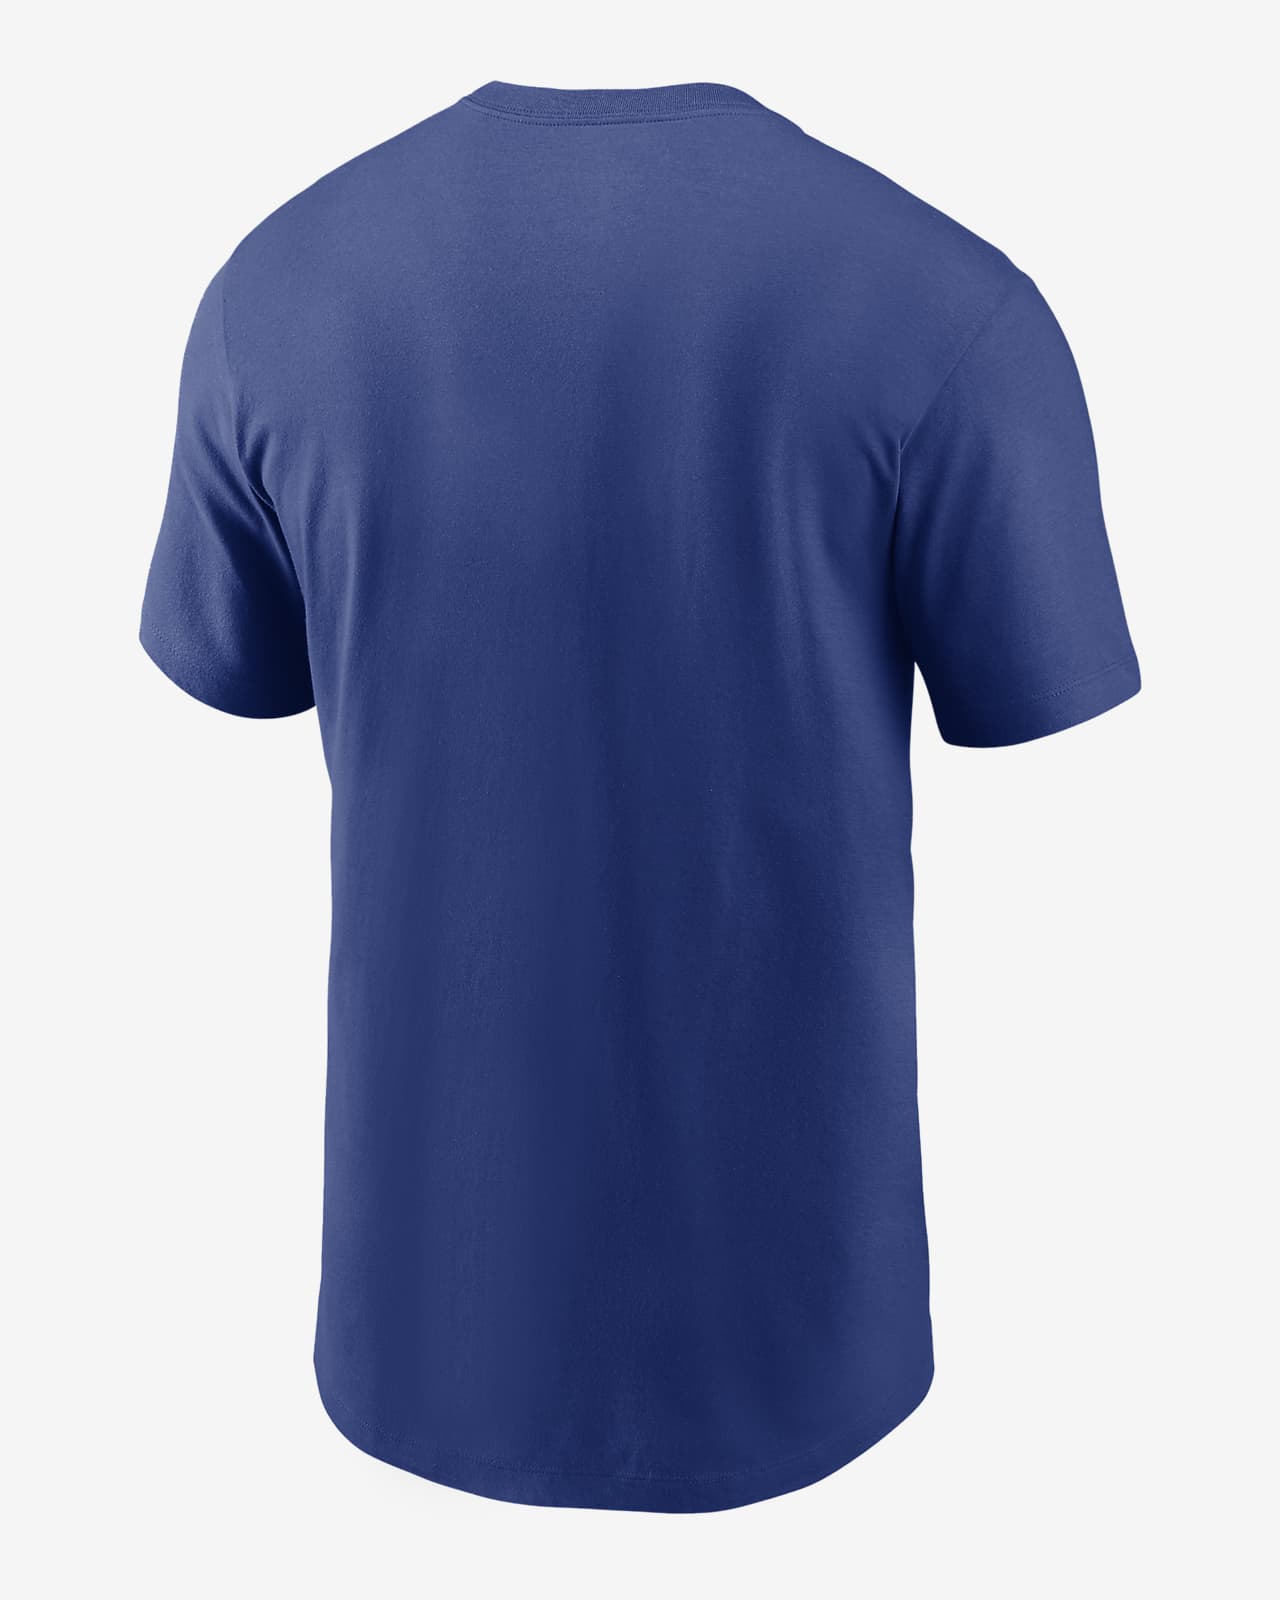 Nike Rewind Arch (MLB City Royals) Men's T-Shirt. .com